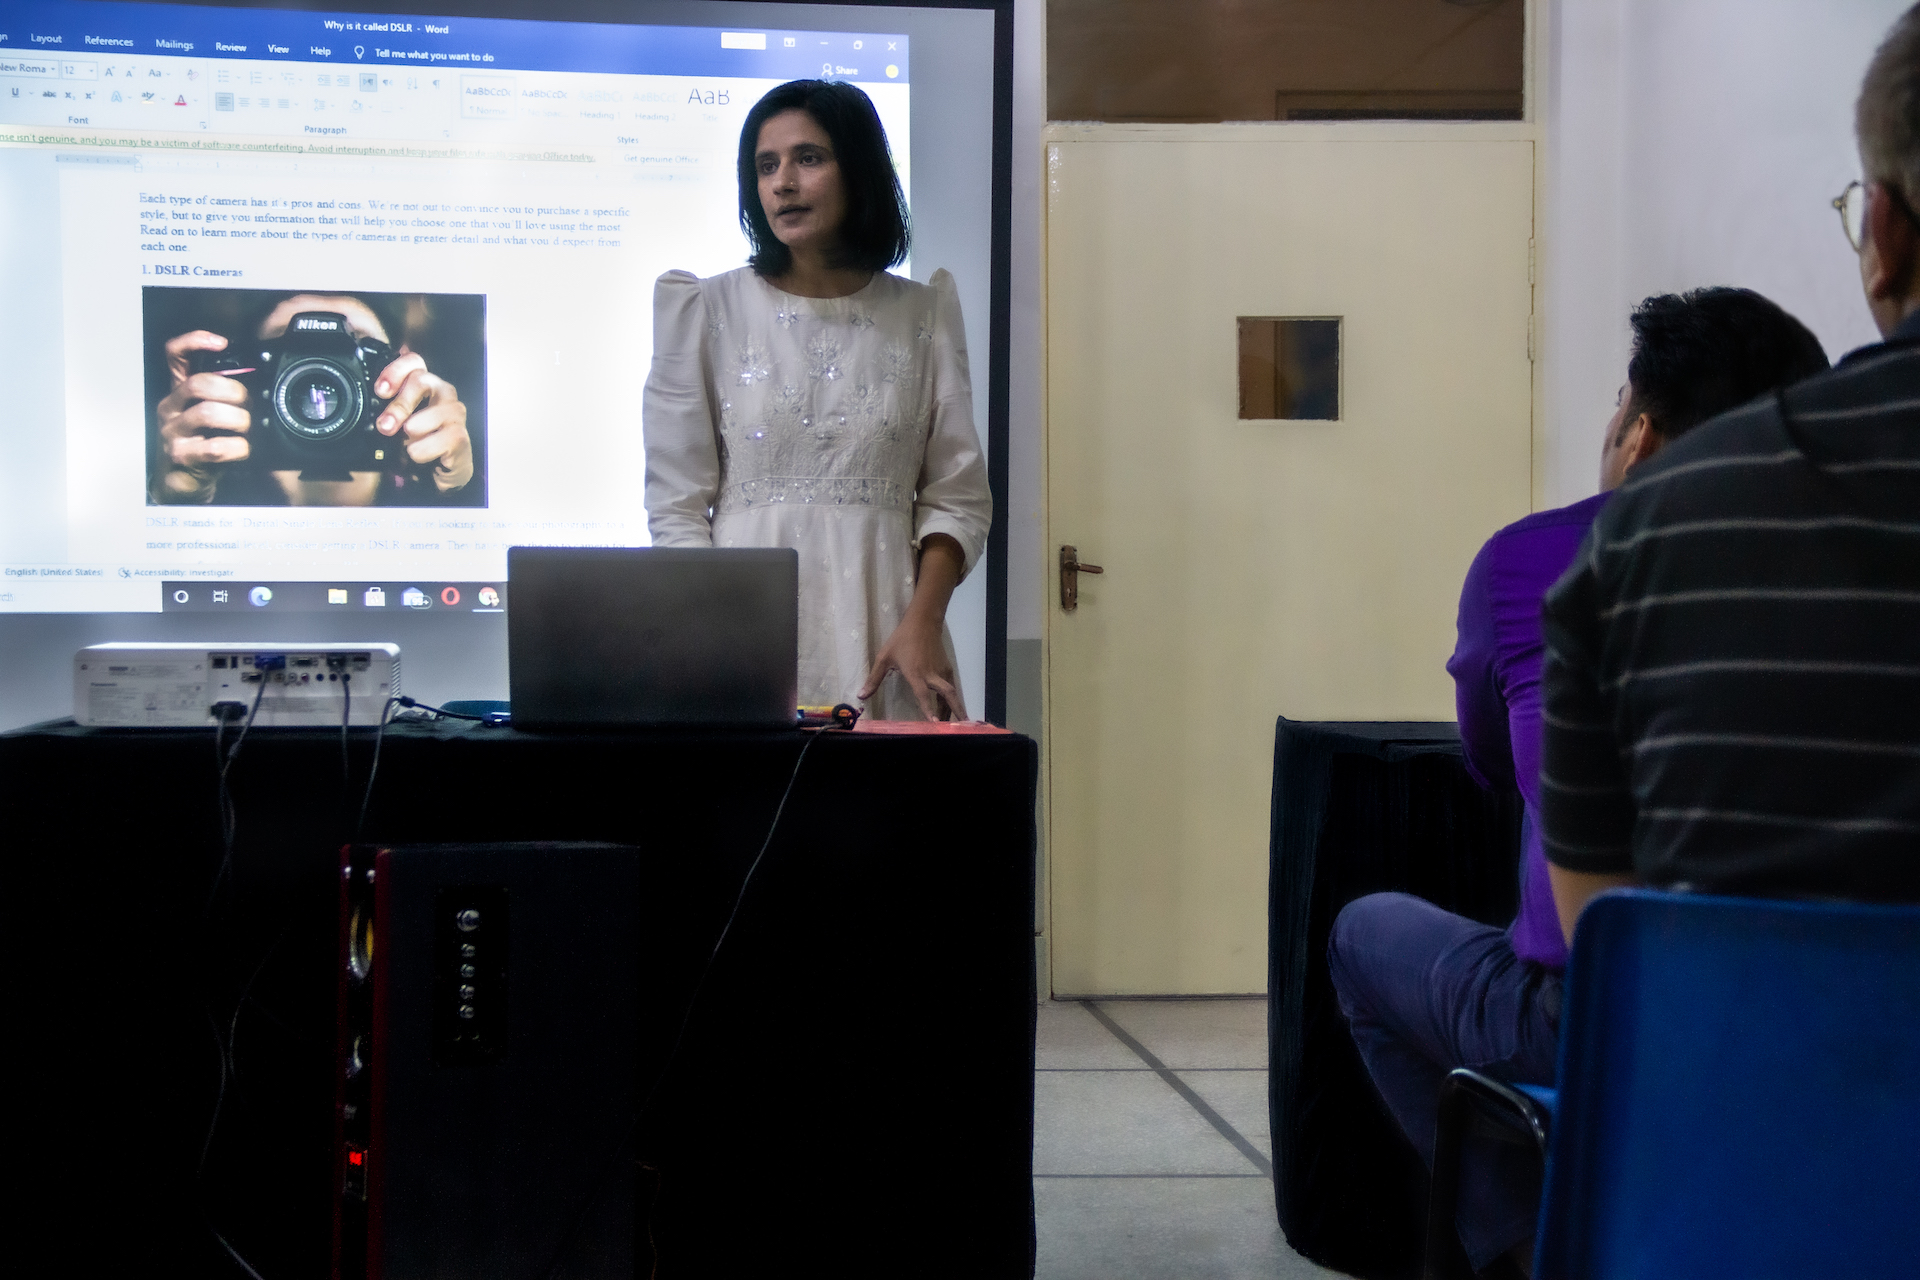 Eine junge Frau mit mittellangem, schwarzem Haar steht in einem Klassenraum vor einer Klasse. Ein Beamer wirft eine Präsentation hinter sie an die Wand, in der es um Kameras geht. 